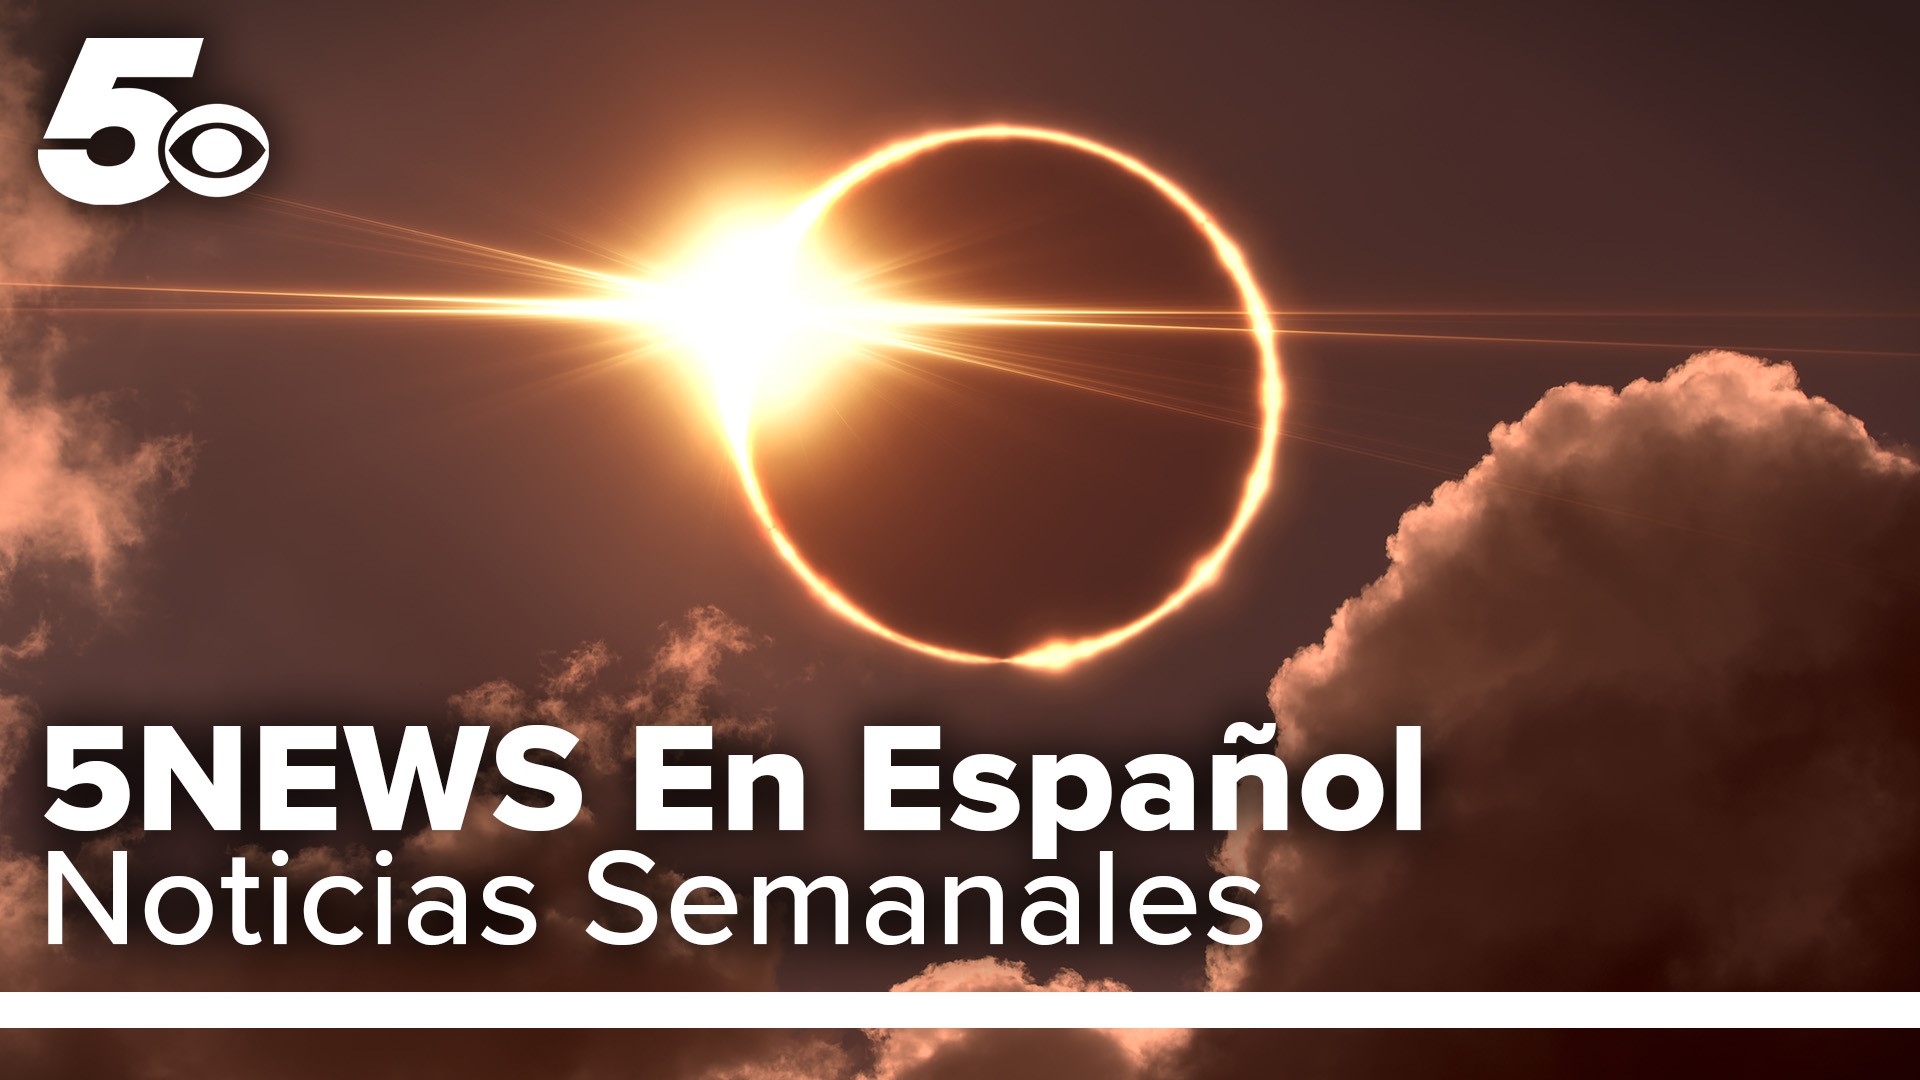 Vea este video para saber porque no debe ver el eclipse sin protección en los ojos. Esto y mas en sus noticias semanales en 5NEWS En Español.